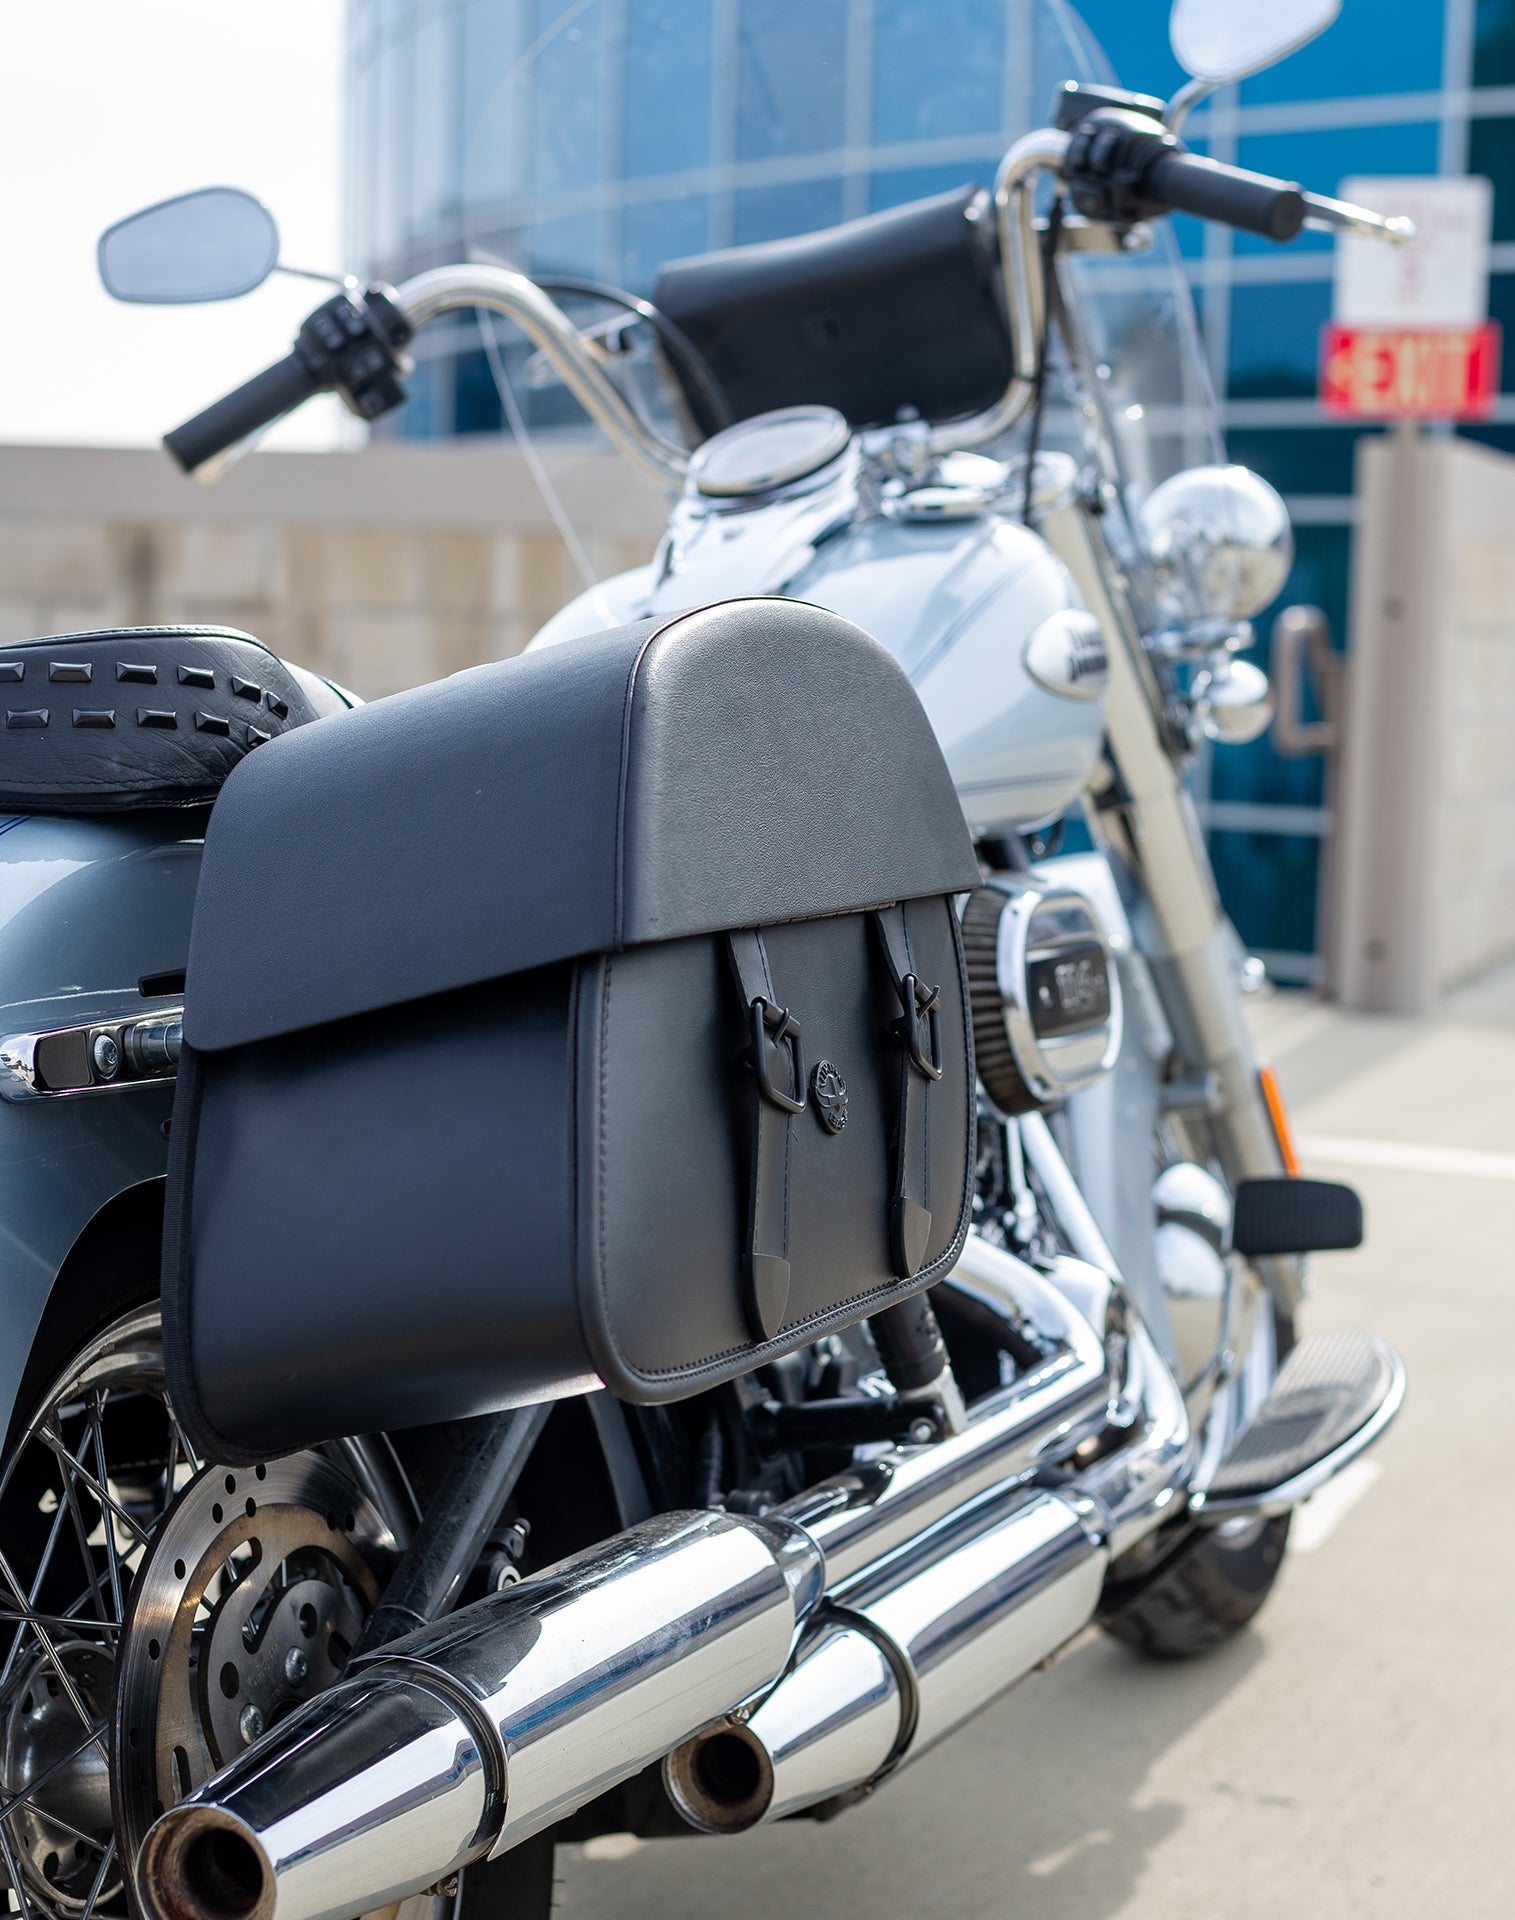 Viking Baelor Medium Leather Motorcycle Saddlebags For Harley Davidson Softail Heritage Flst I C Ci Hard Shell Construction